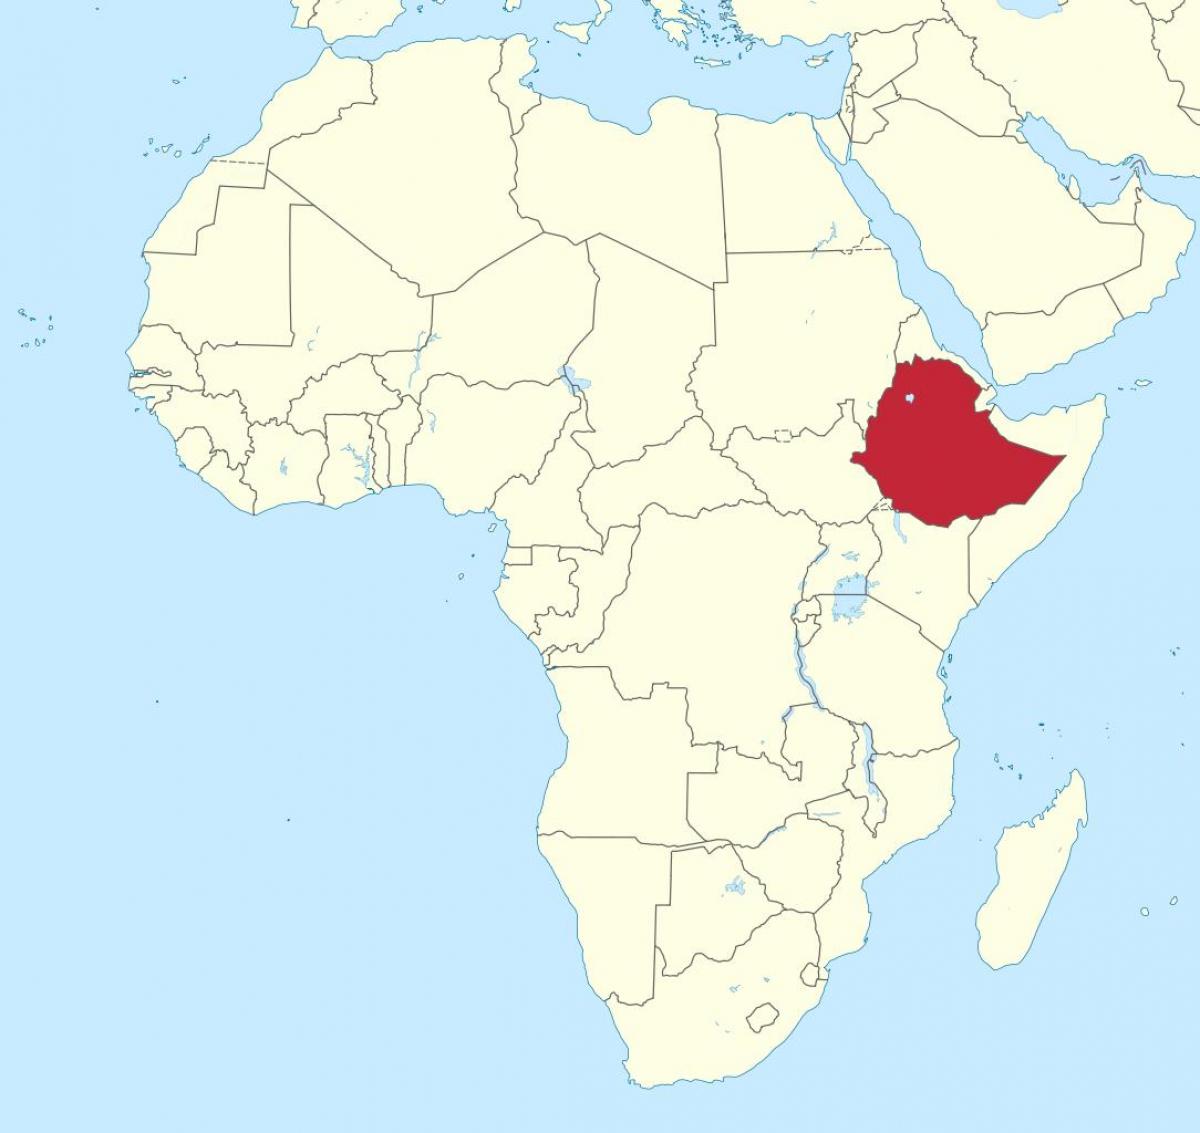 નકશો આફ્રિકા દર્શાવે છે, ઇથોપિયા